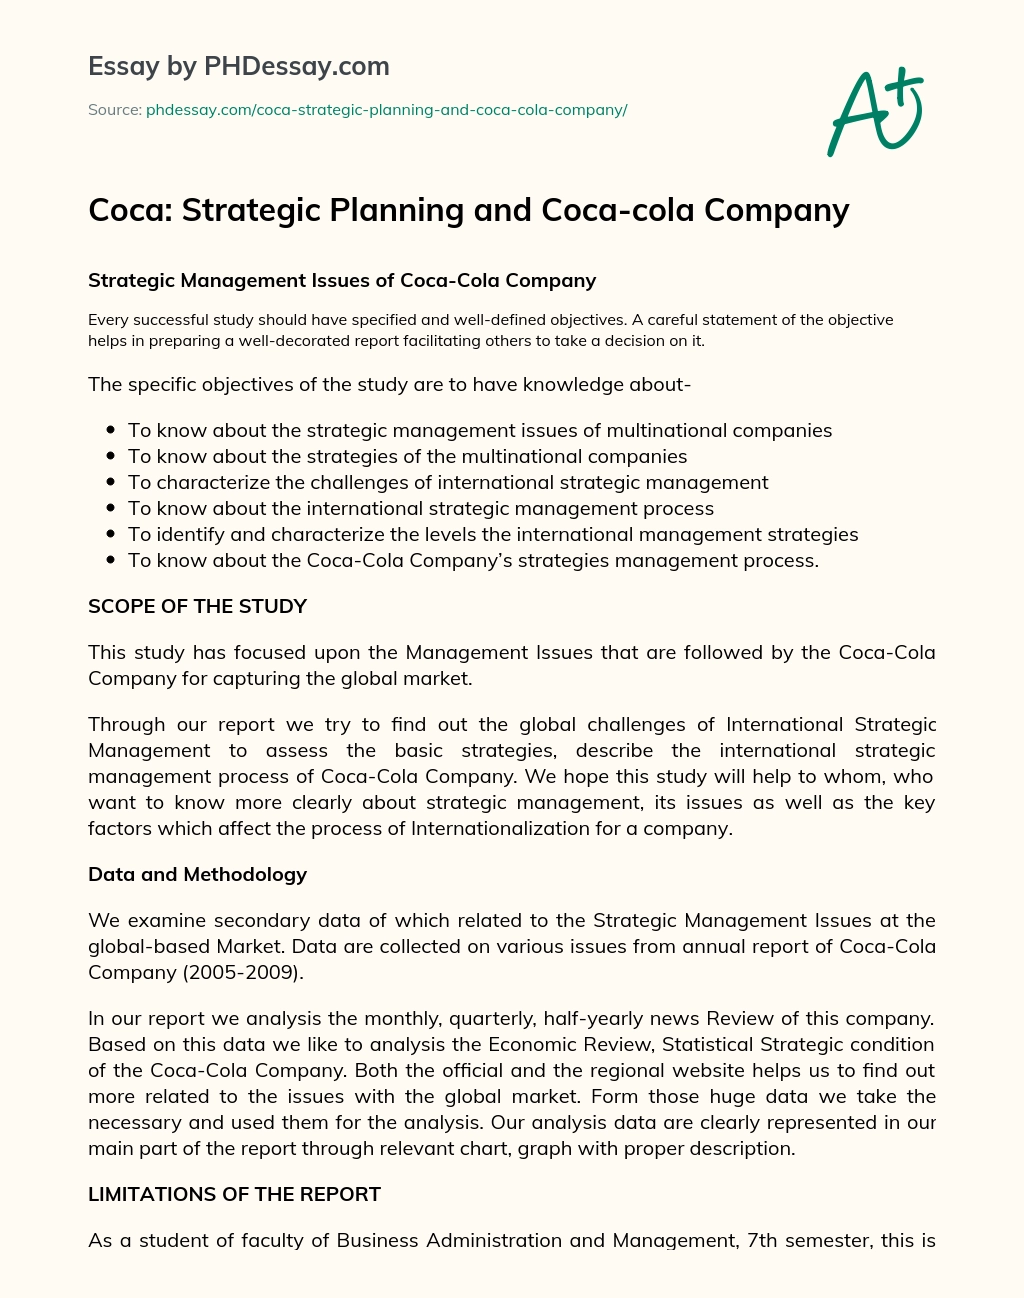 Coca: Strategic Planning and Coca-cola Company essay